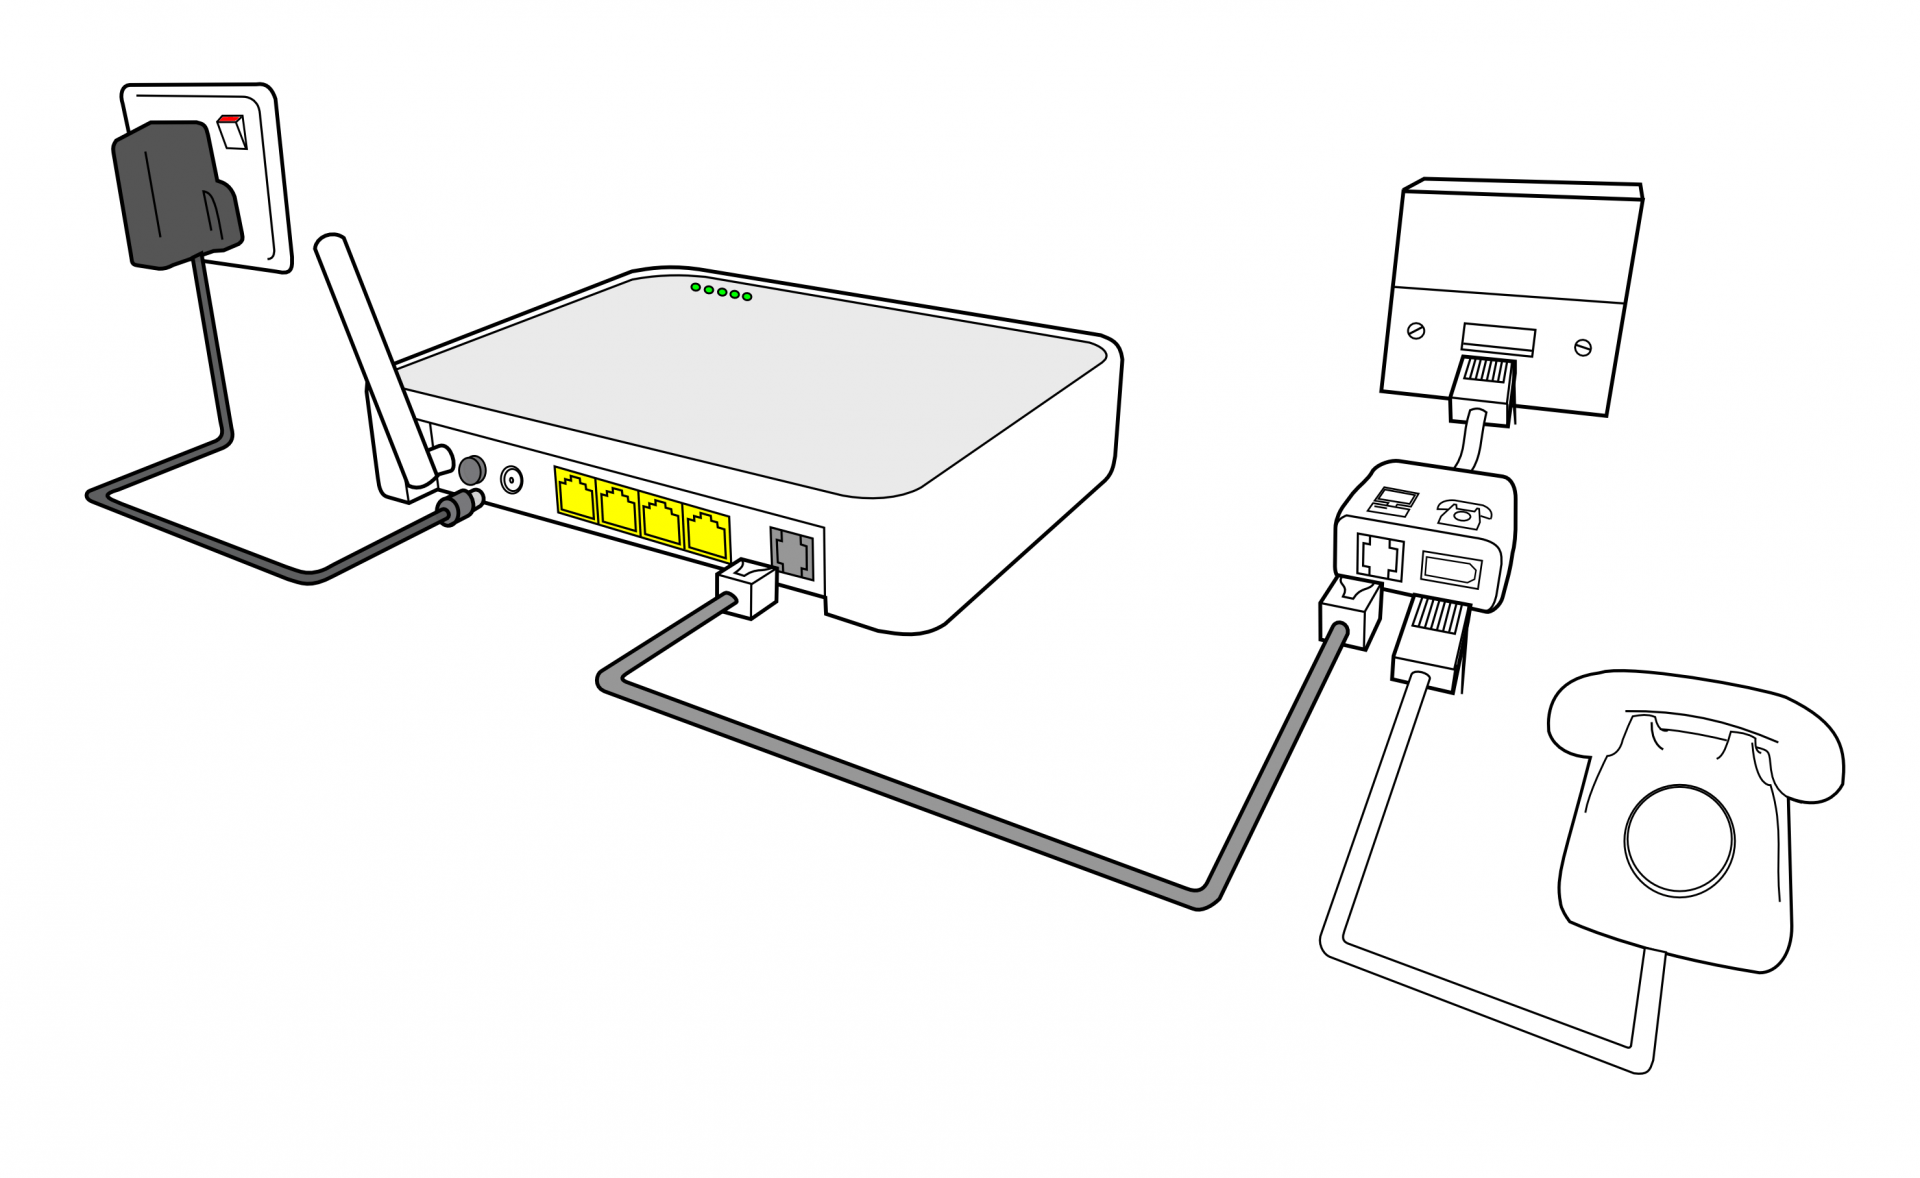 Как подключить роутер к роутеру по wi-fi или с помощью кабеля lan: инструкция в 6 разделах